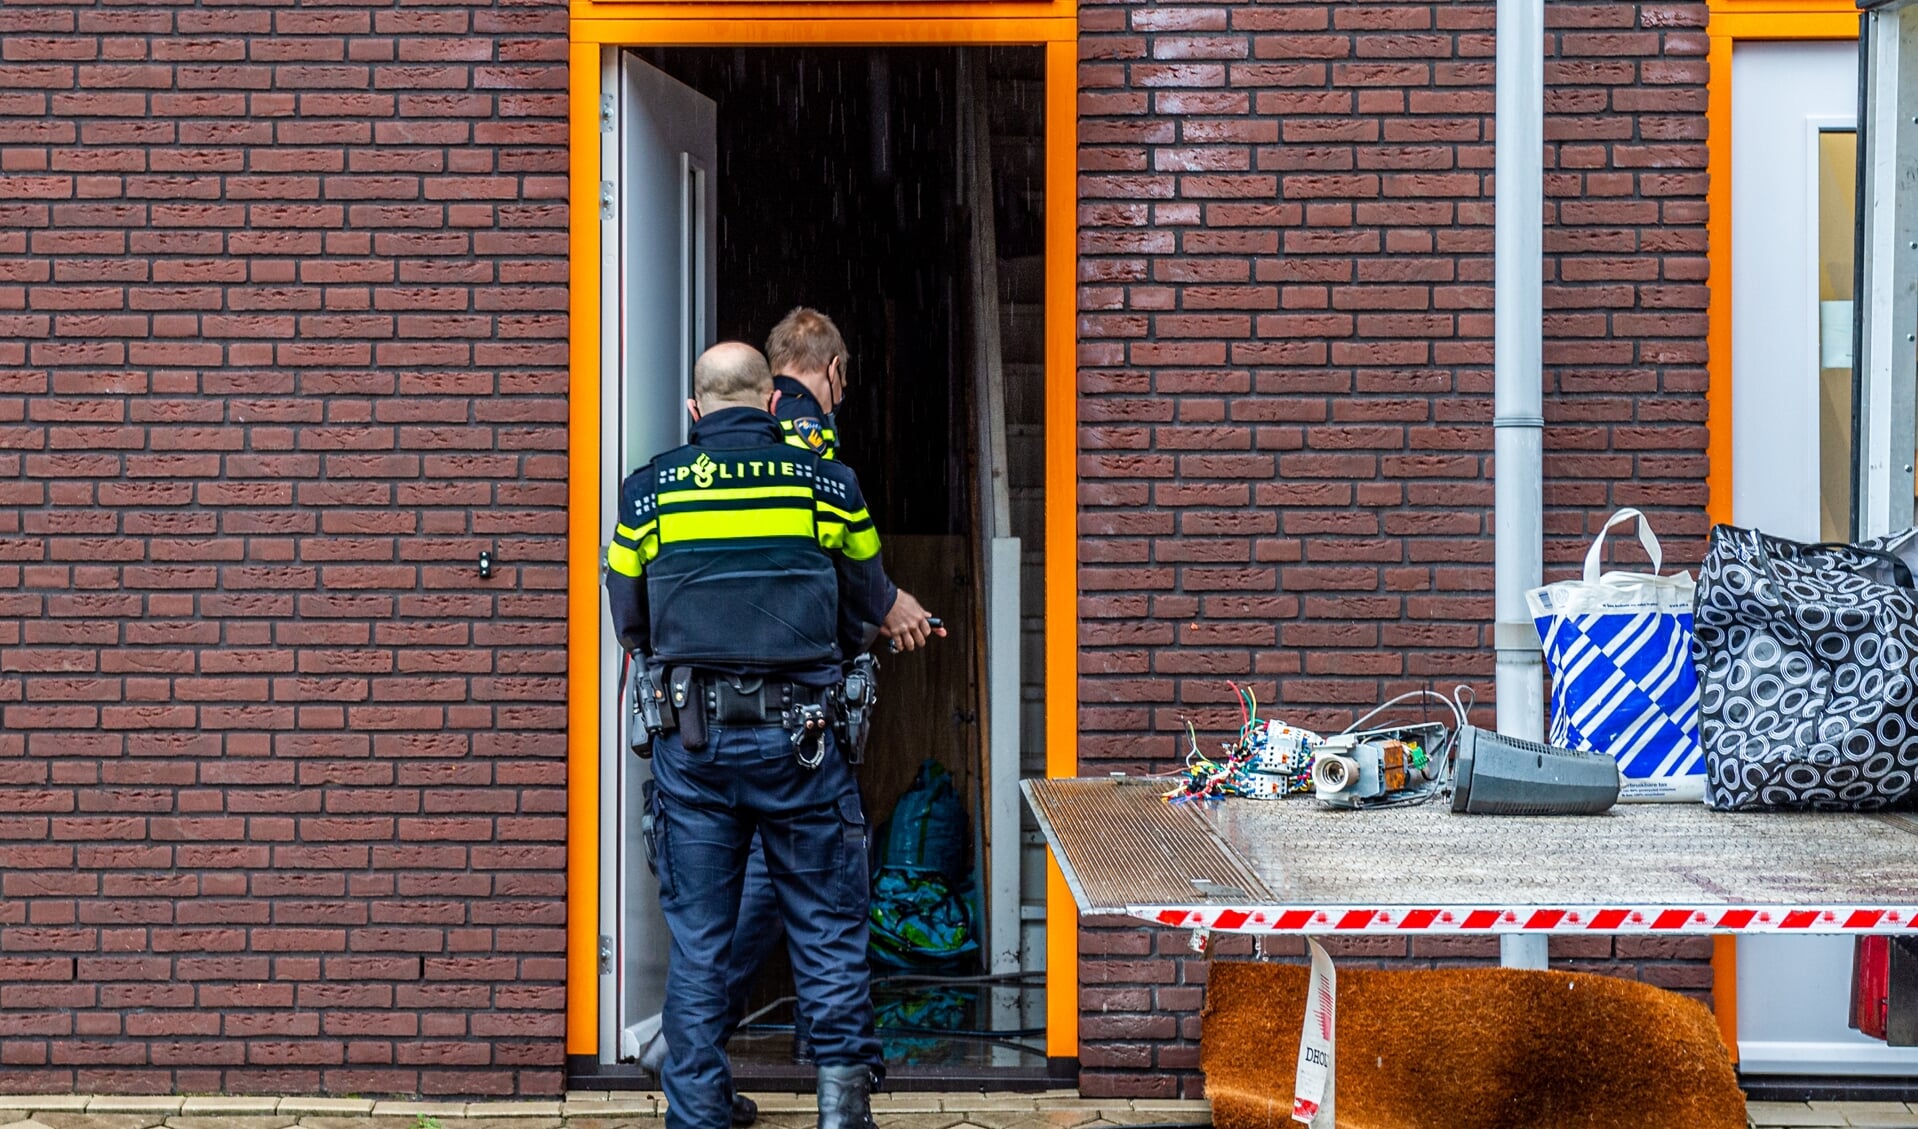 • Politie Krimpenerwaard was woensdagmiddag bezig met het verwijderen van restanten uit de wietkwekerij in een bedrijfspand aan de Platinastraat in Schoonhoven.